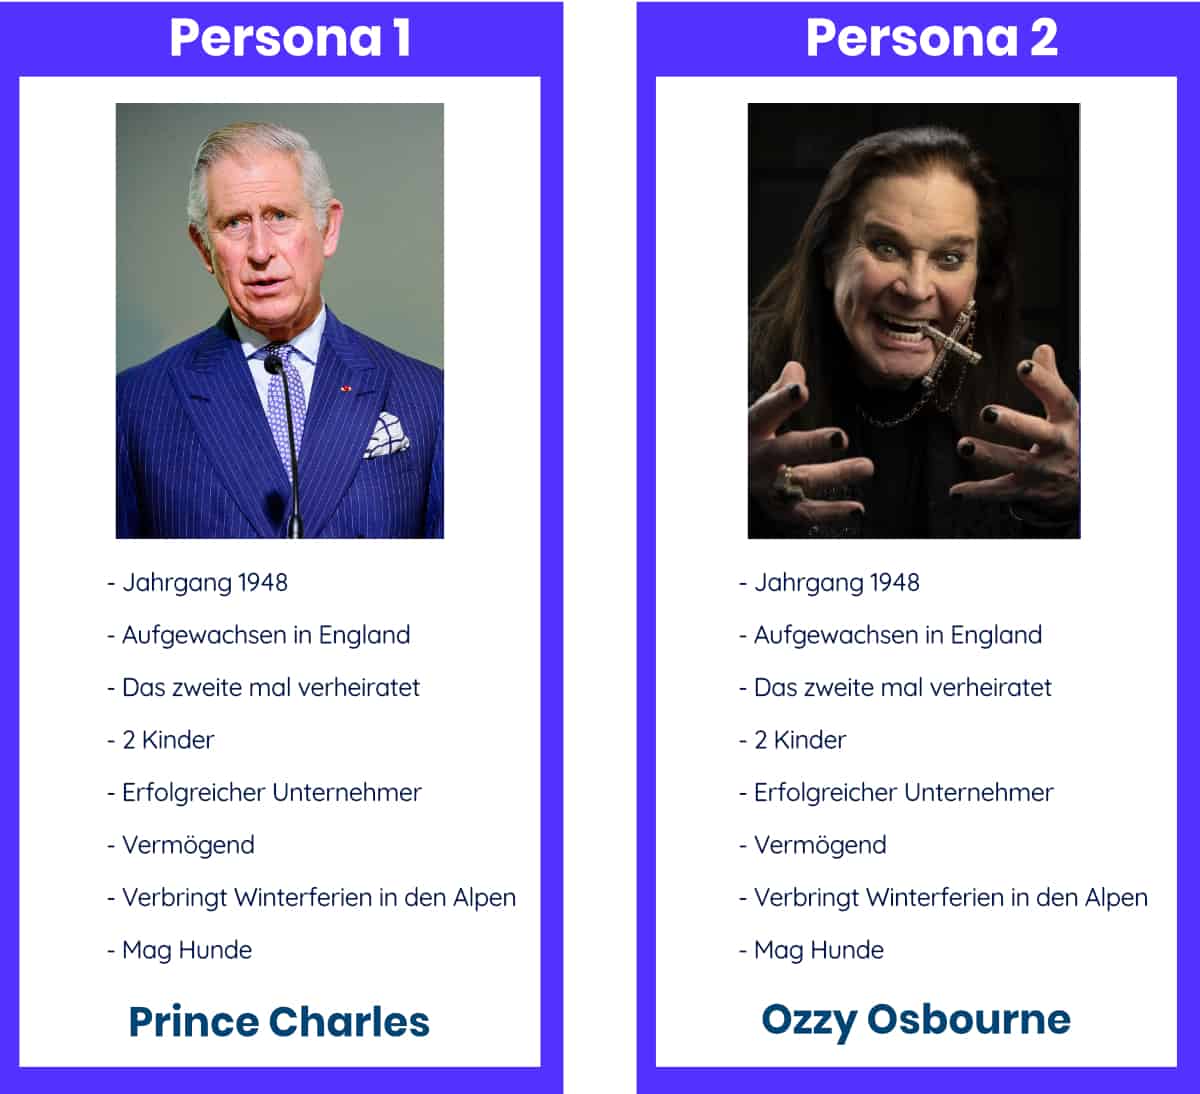 ozzy-osbourne-vs-prince-charles-personas 